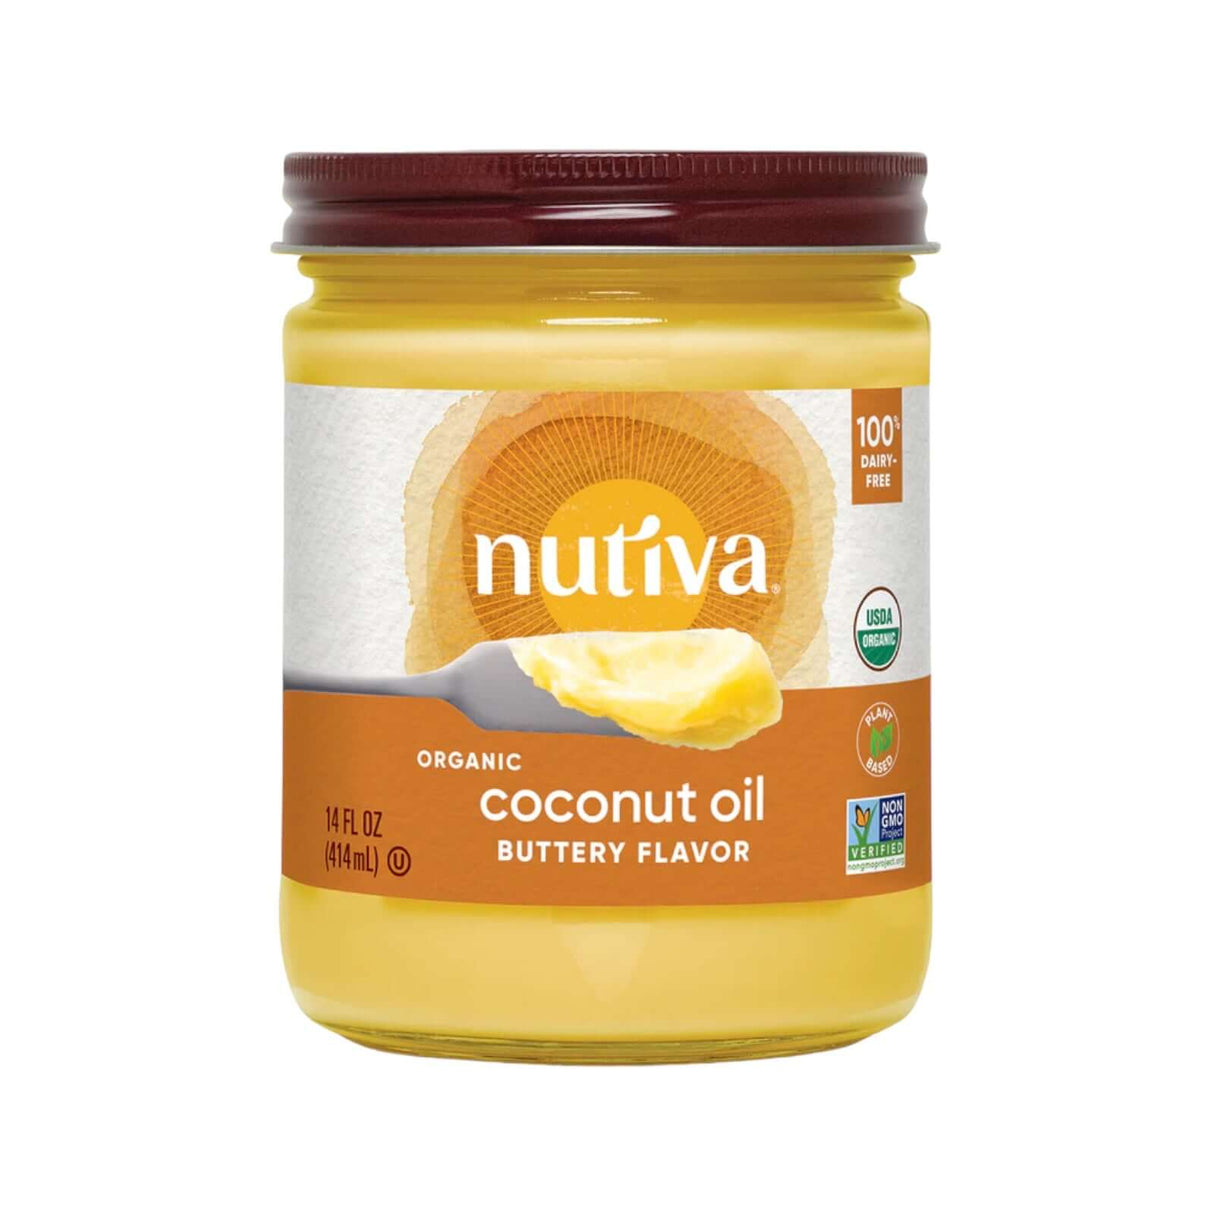 Nutiva Organic Coconut Oil Buttery Flavor